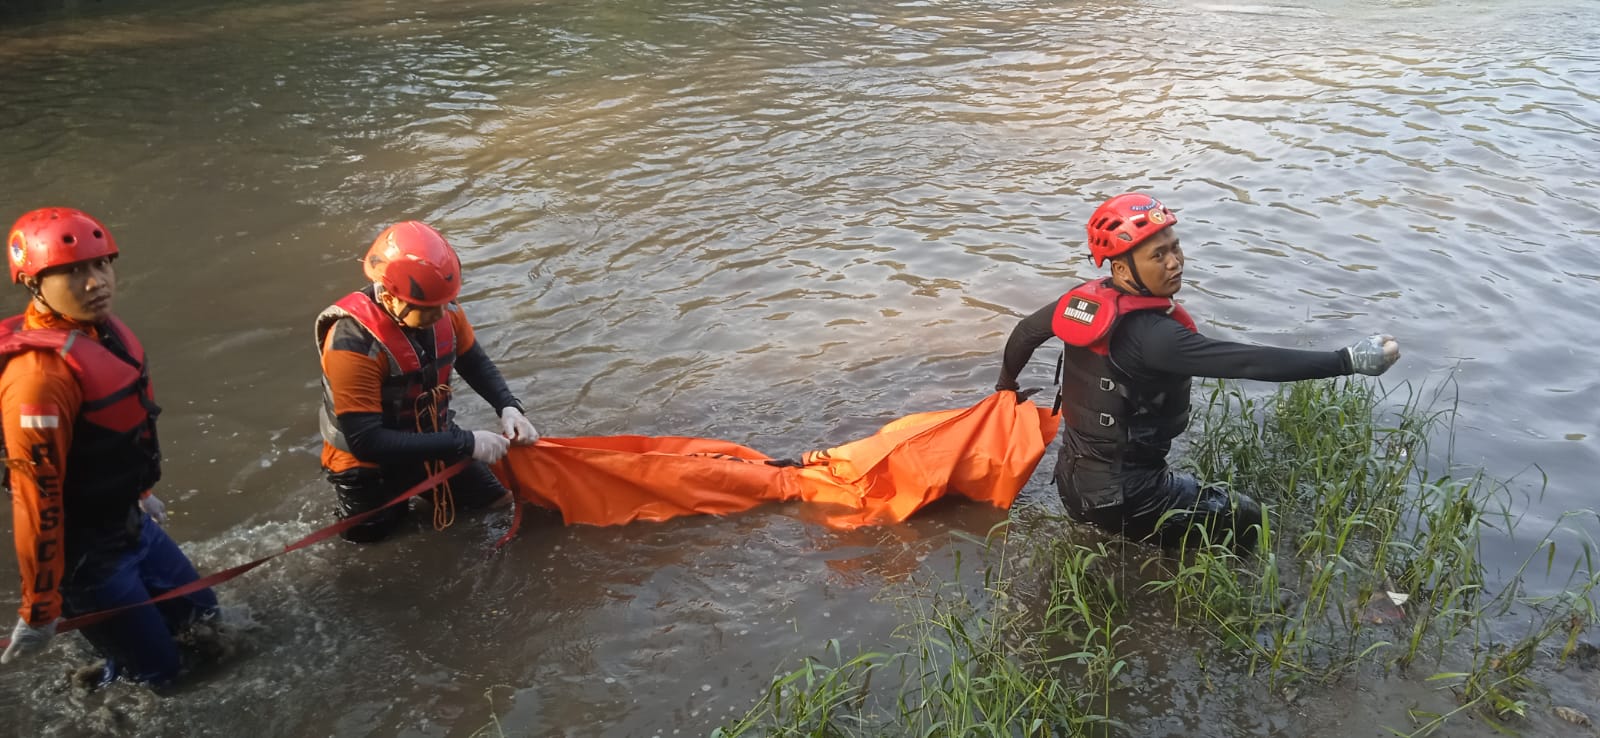 Mayat Bocah Tak Berbaju Tersangkut di Sungai Jombang, Ini Identitasnya